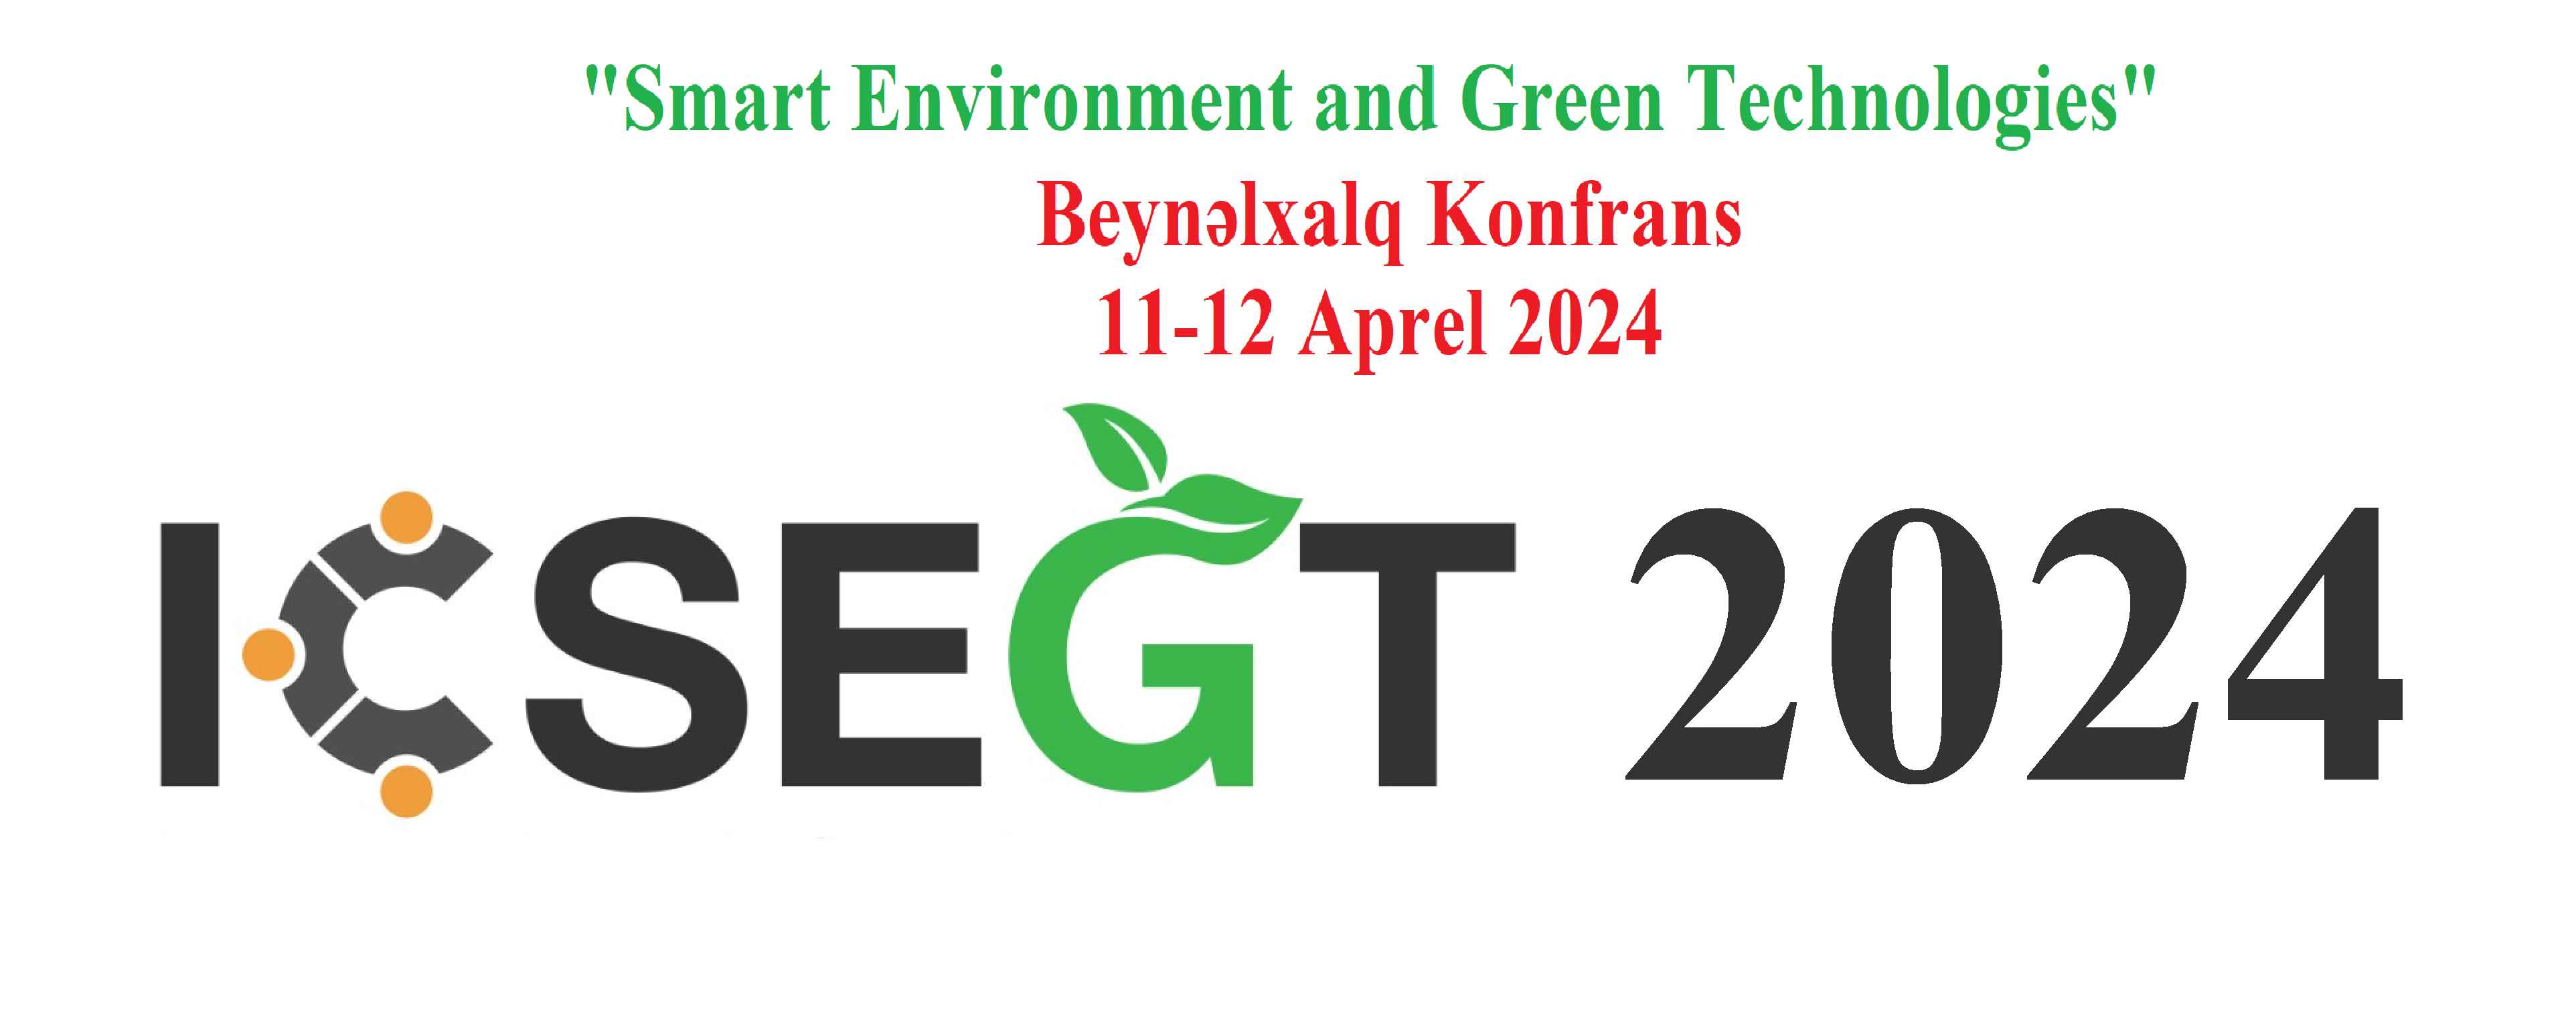 OYU'da "Smart Environment and Green Technologies" konulu uluslararası konferans düzenlenecek